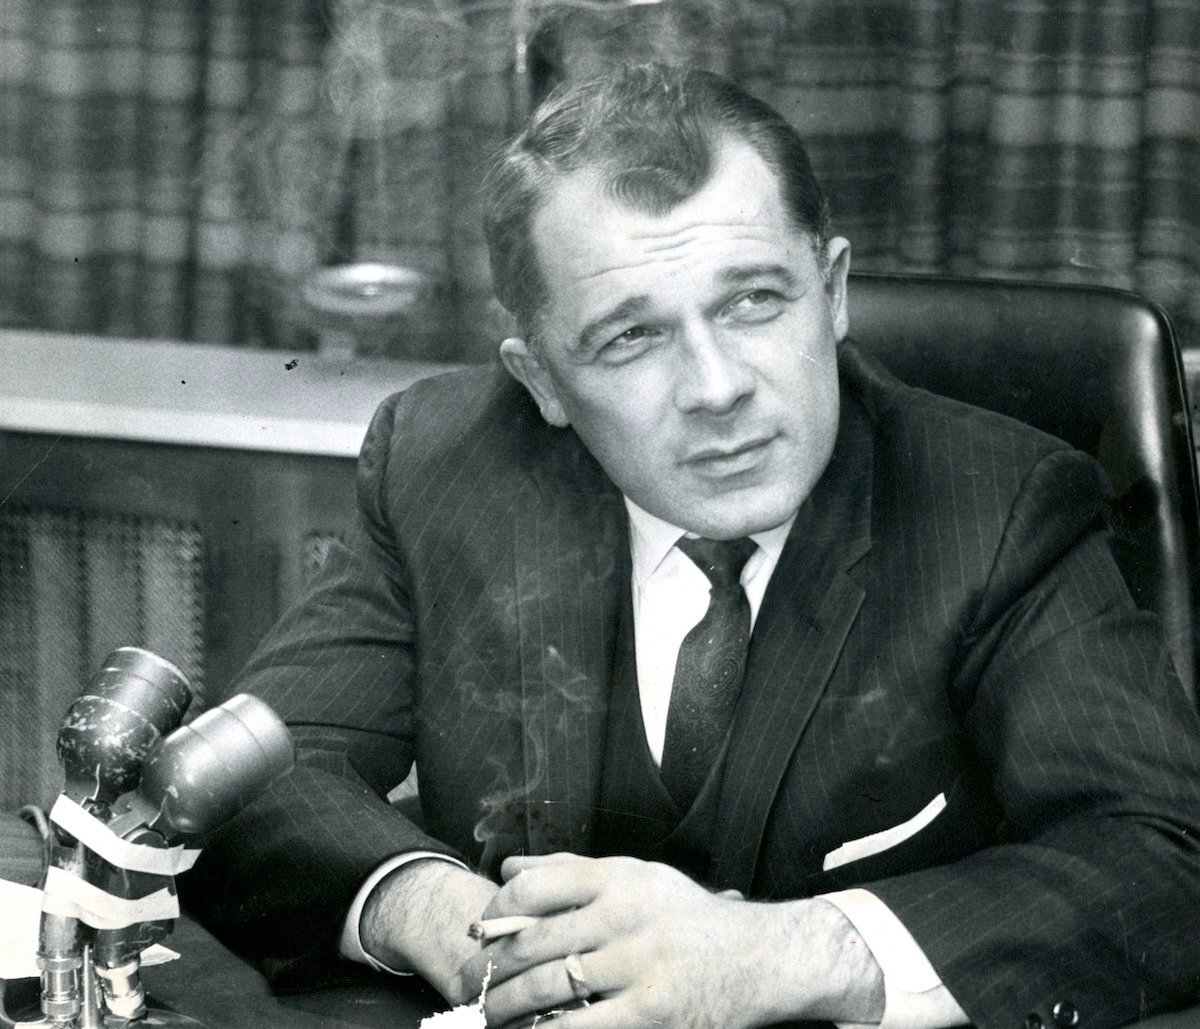 Attorney F. Lee Bailey, who represents Albert DeSalvo, the self-confessed Boston Strangler in 1967